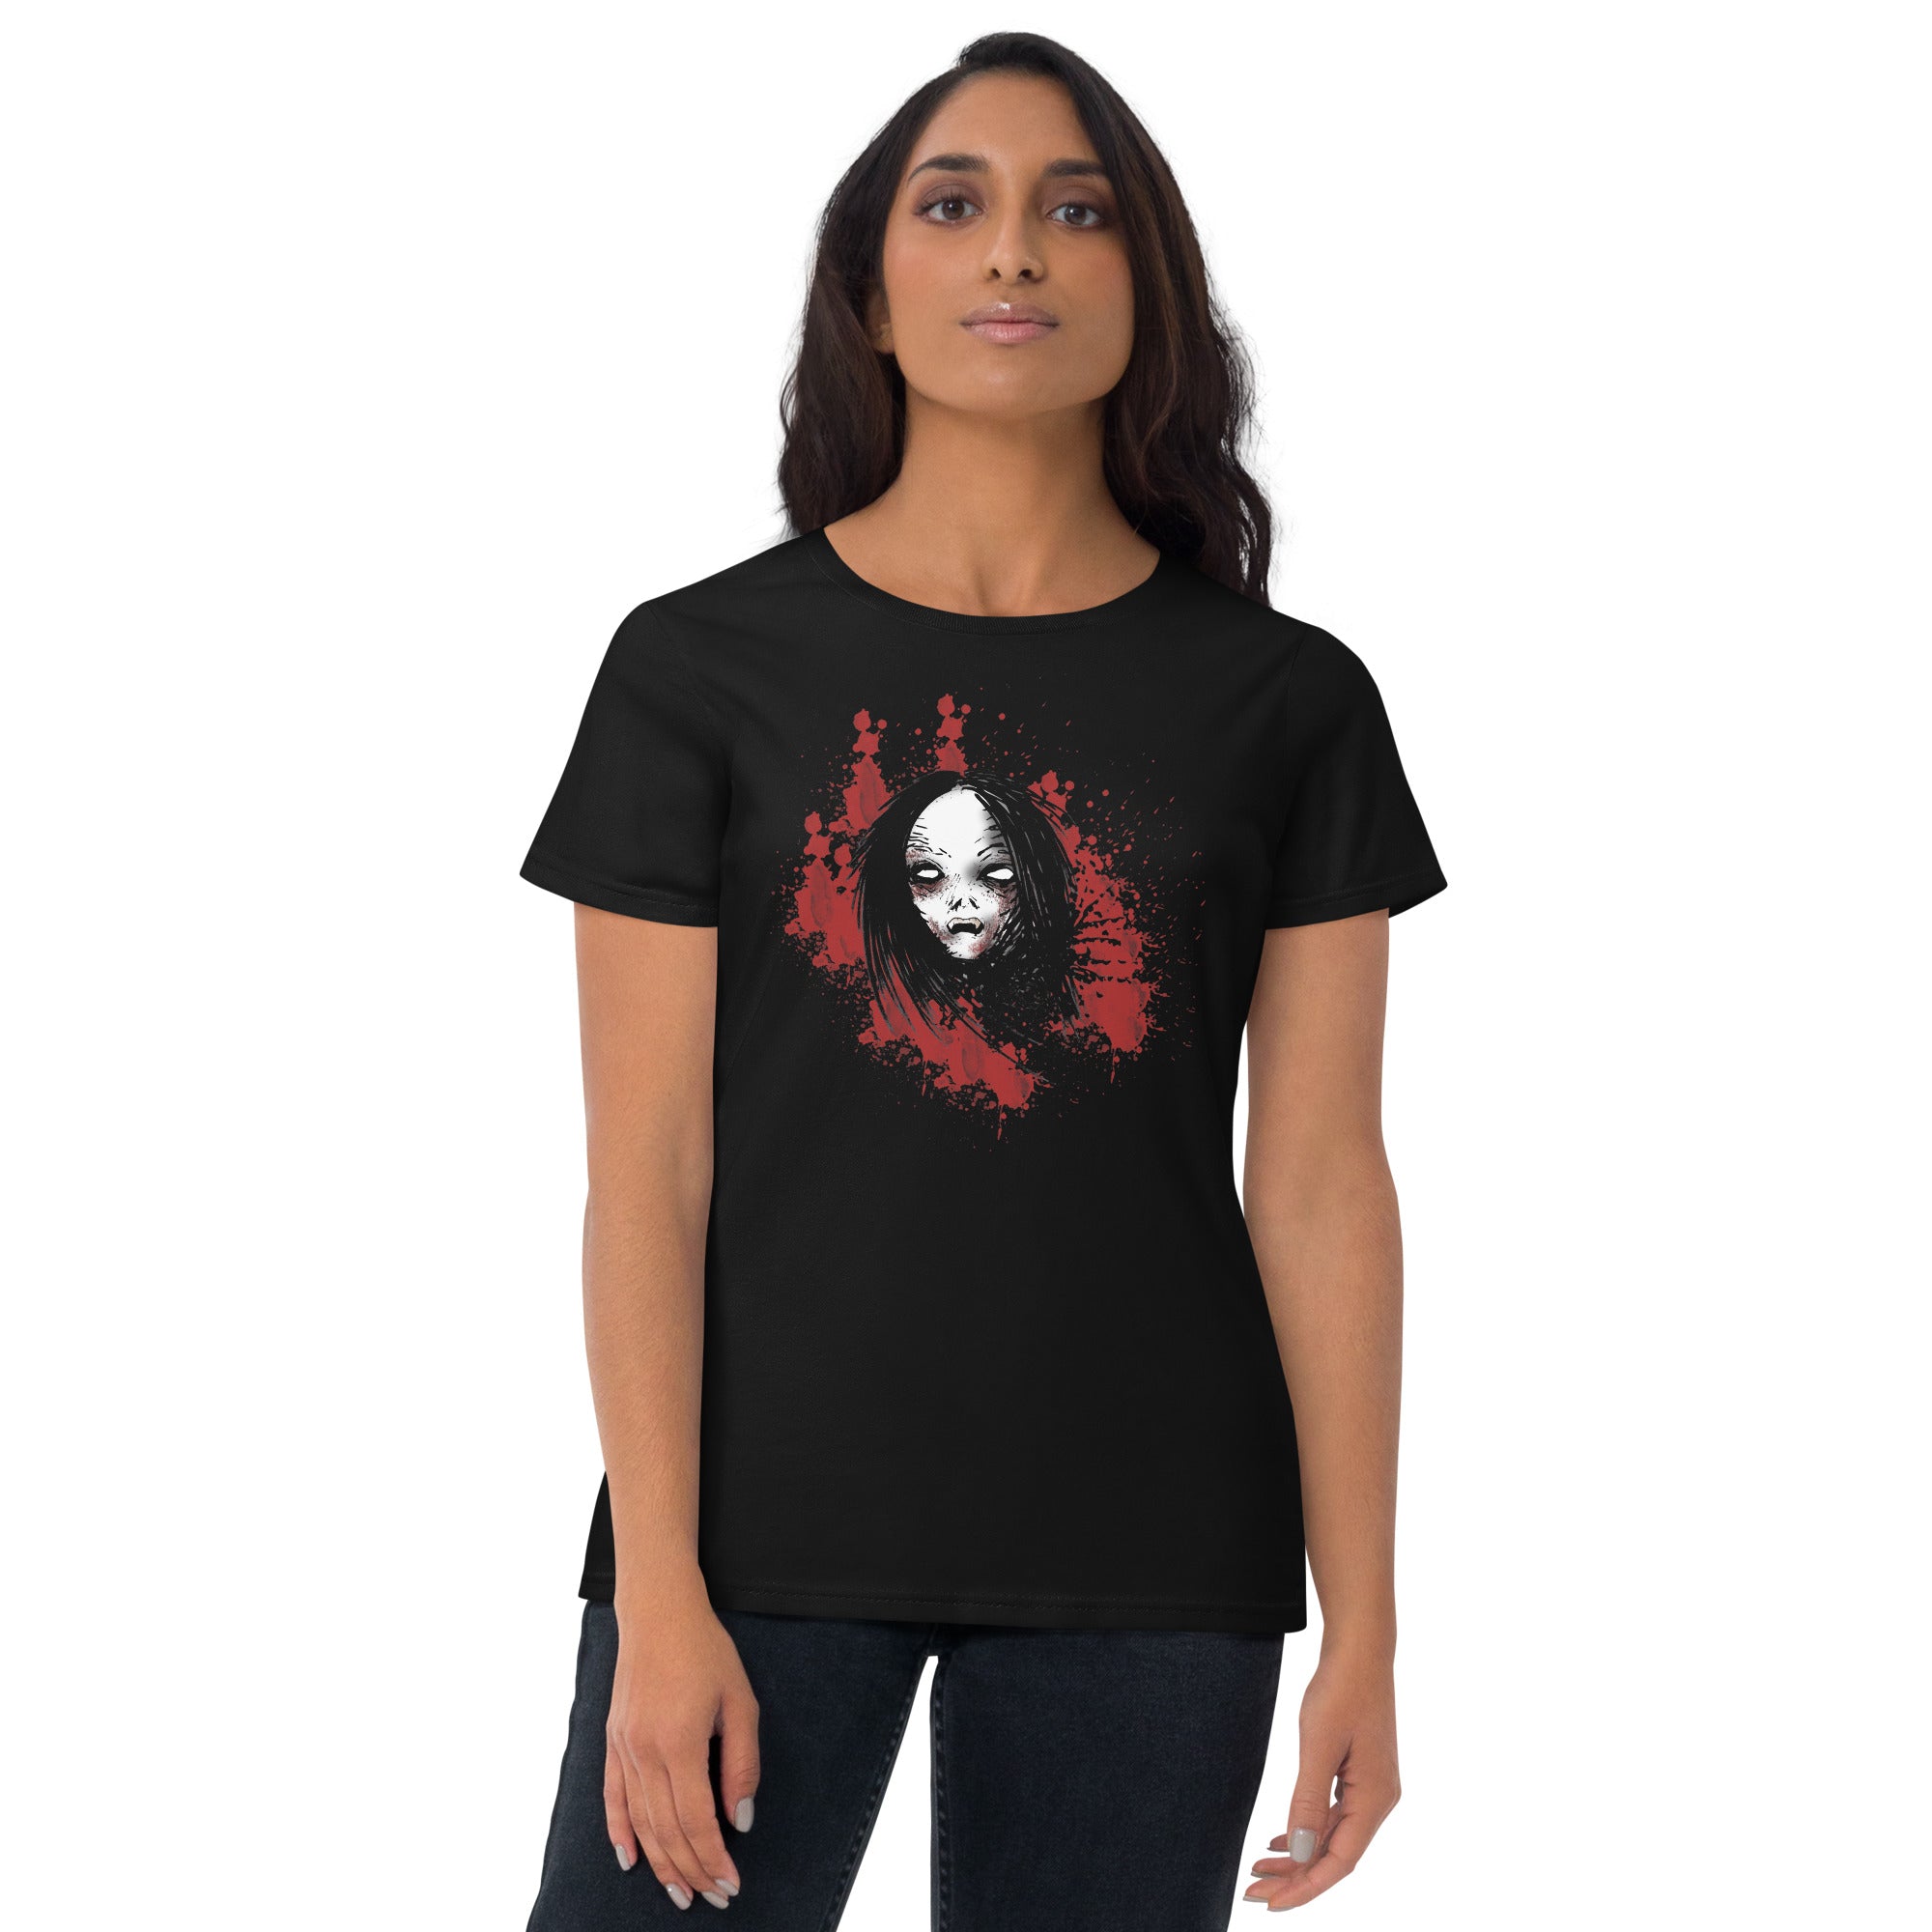 Undead Anime Vampire Girl Horror Women's Short Sleeve Babydoll T-shirt